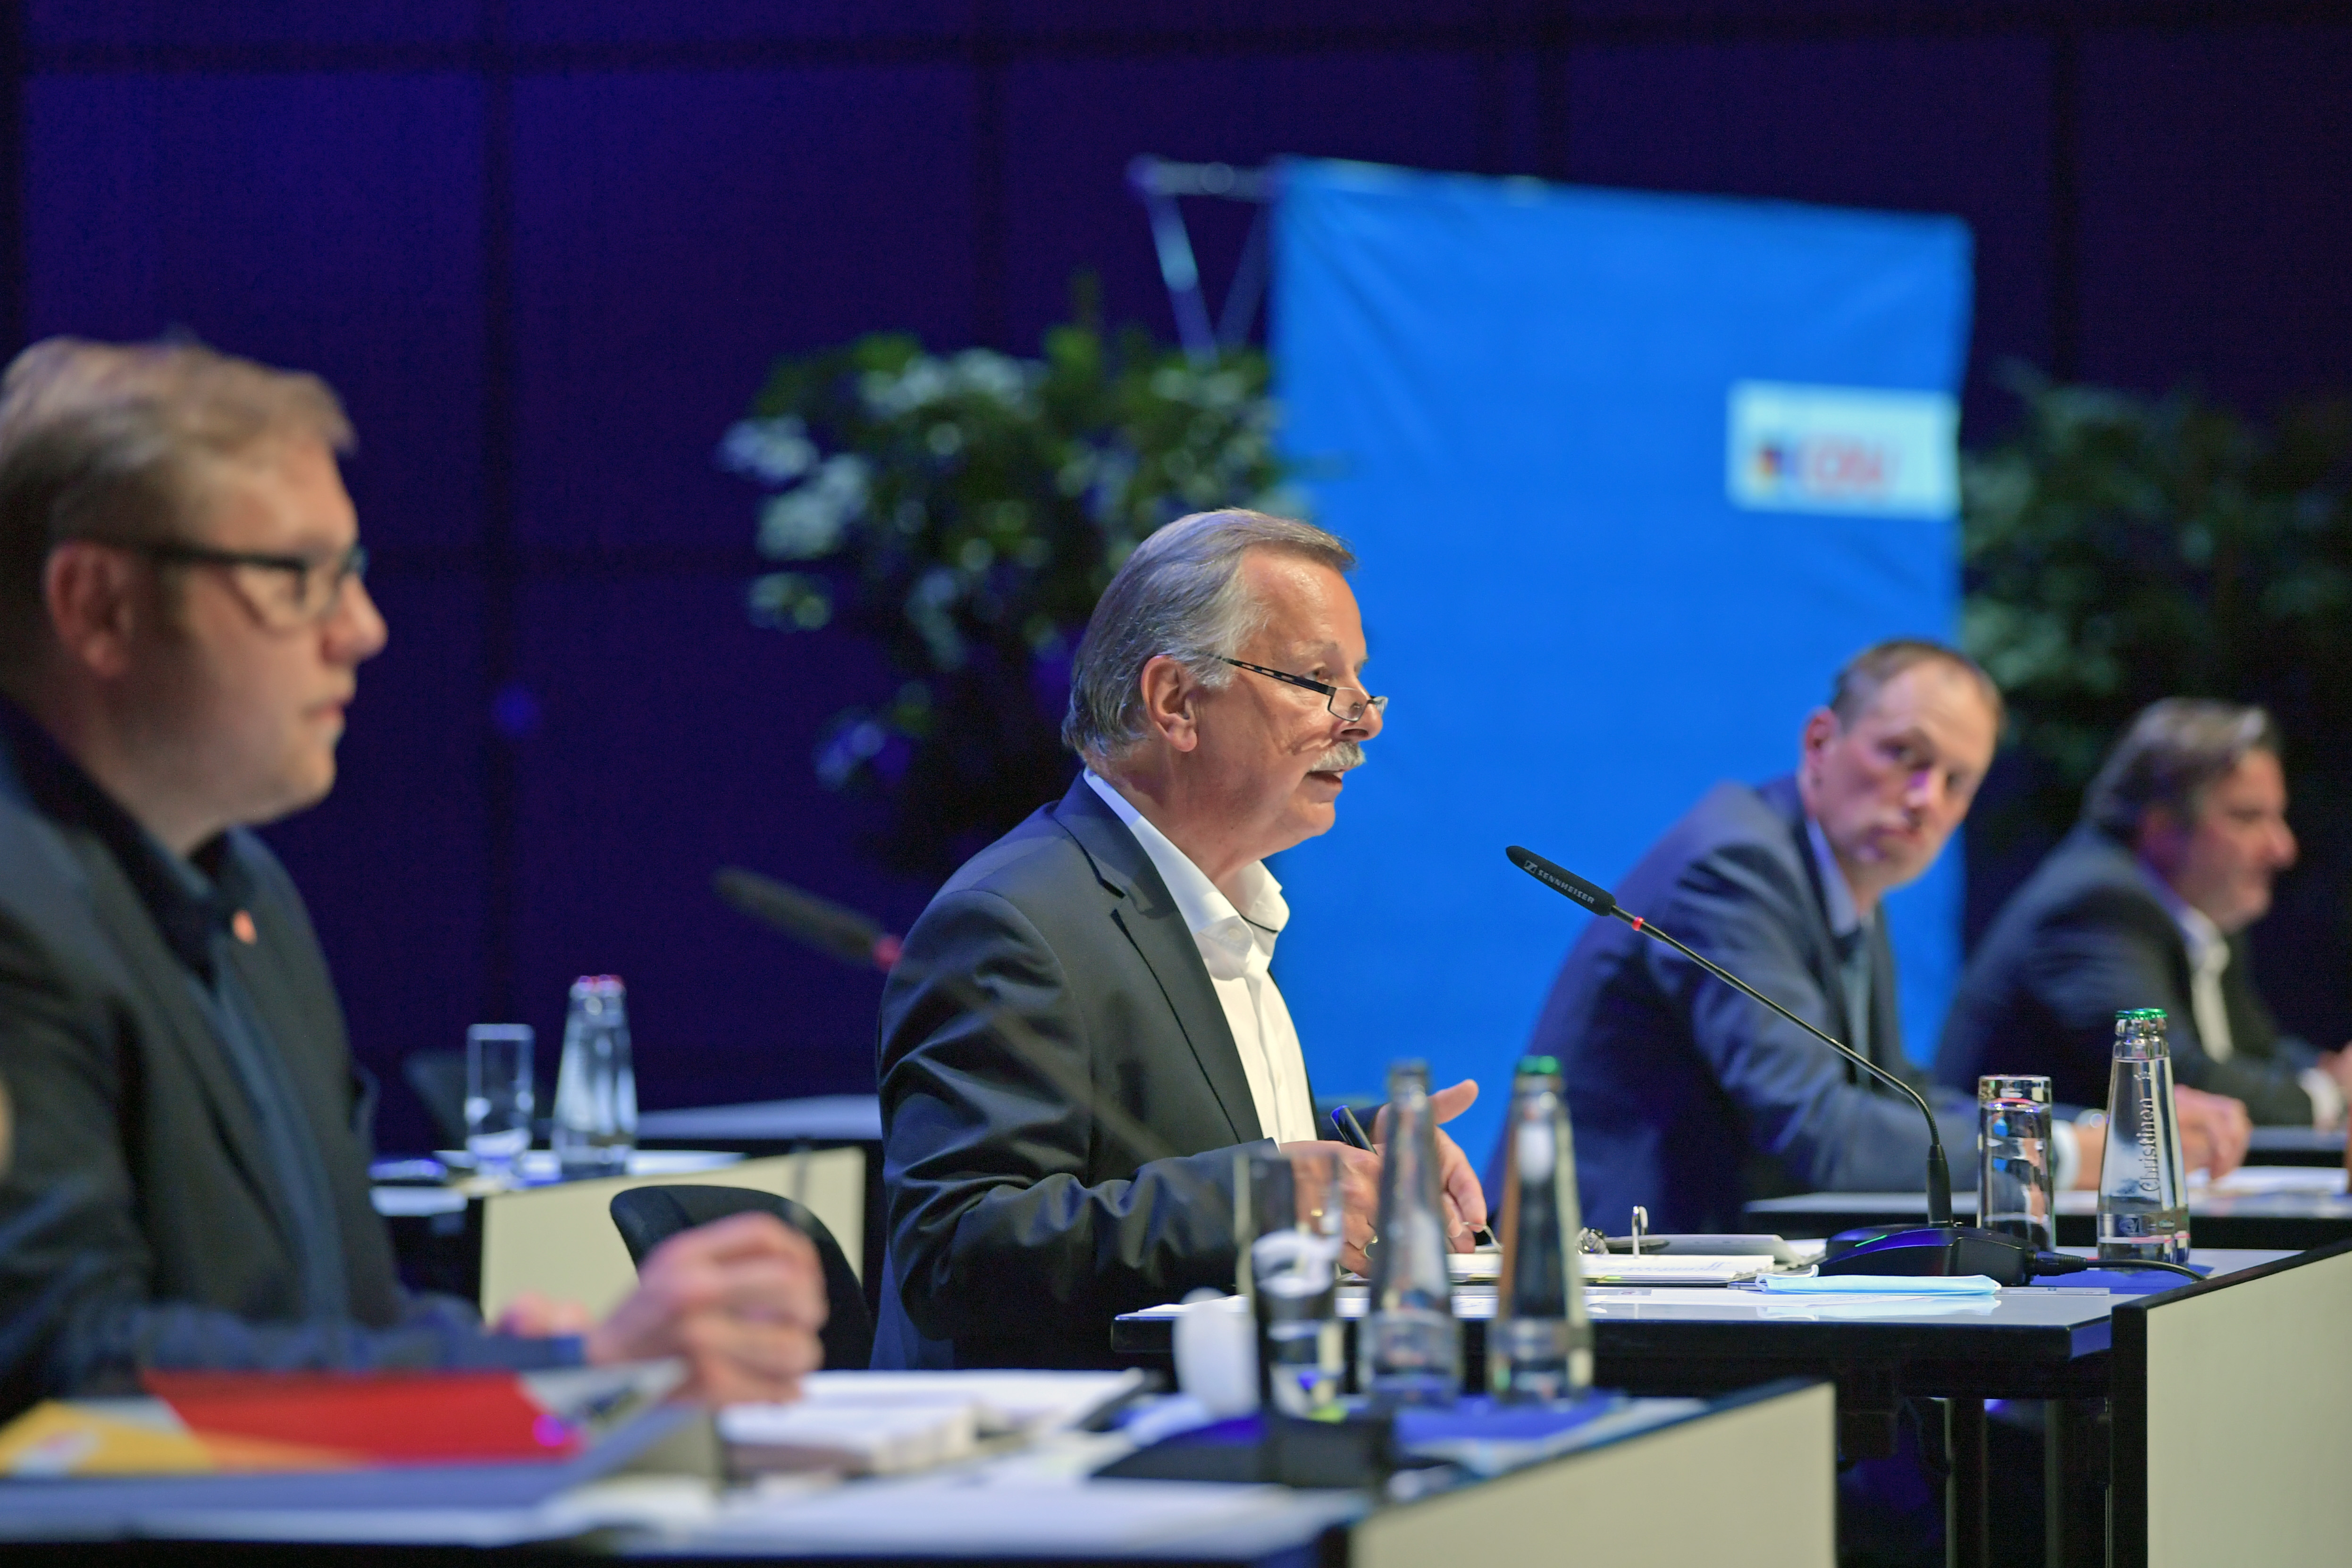 18.61.2020 - Parteitag - Nominierung Oberbürgermeister - Der Parteitag fand unter Corona-Bedingungen in der Stadthalle Bielefeld statt. (Foto: Thomas F.Starke)